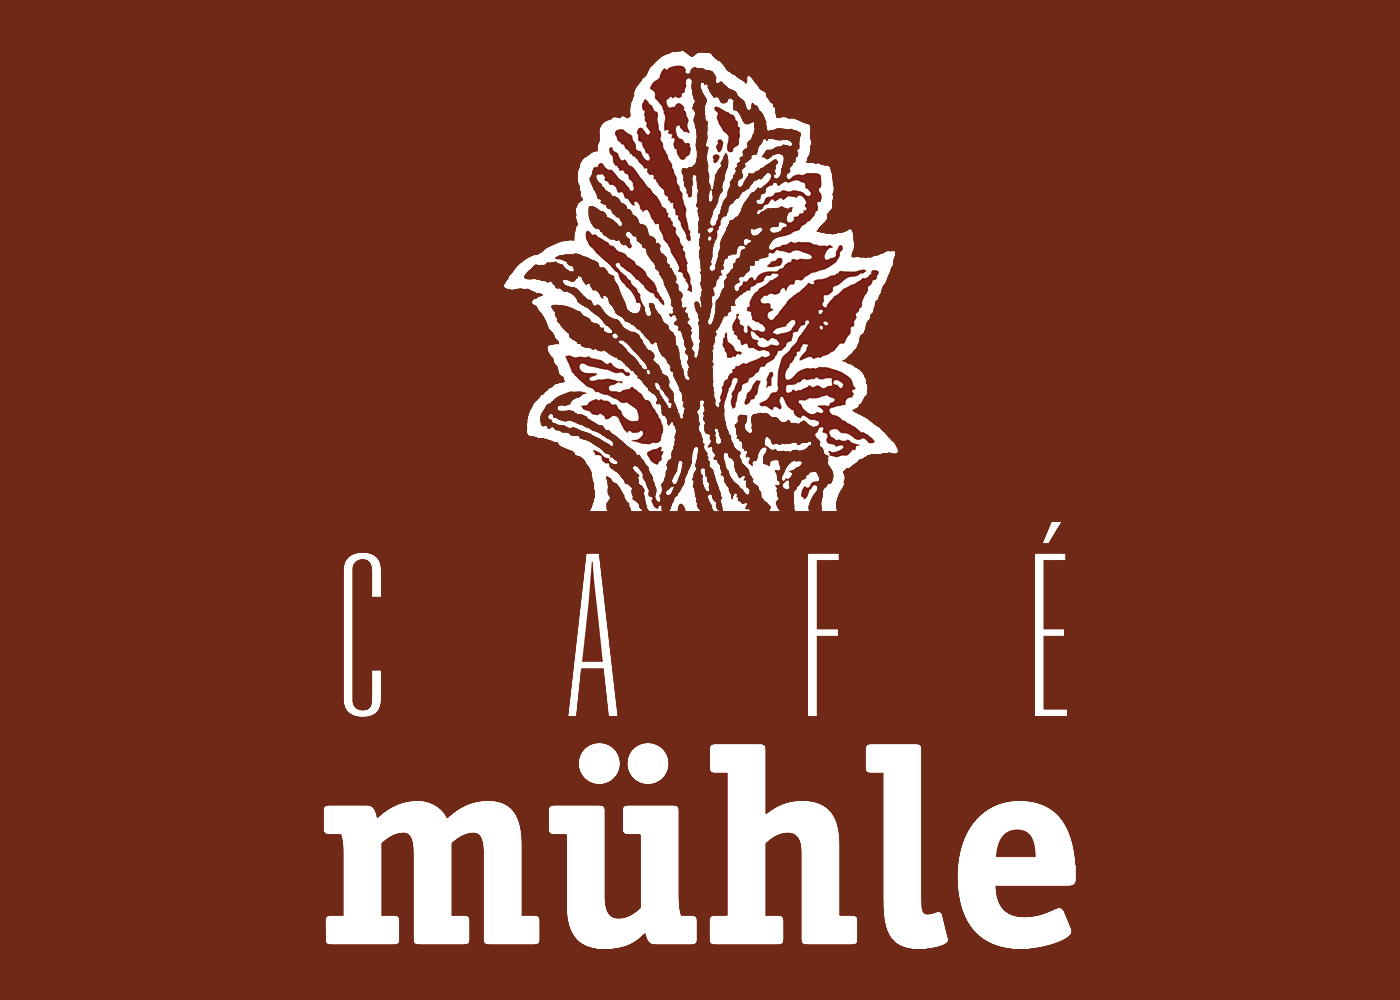 Café Mühle